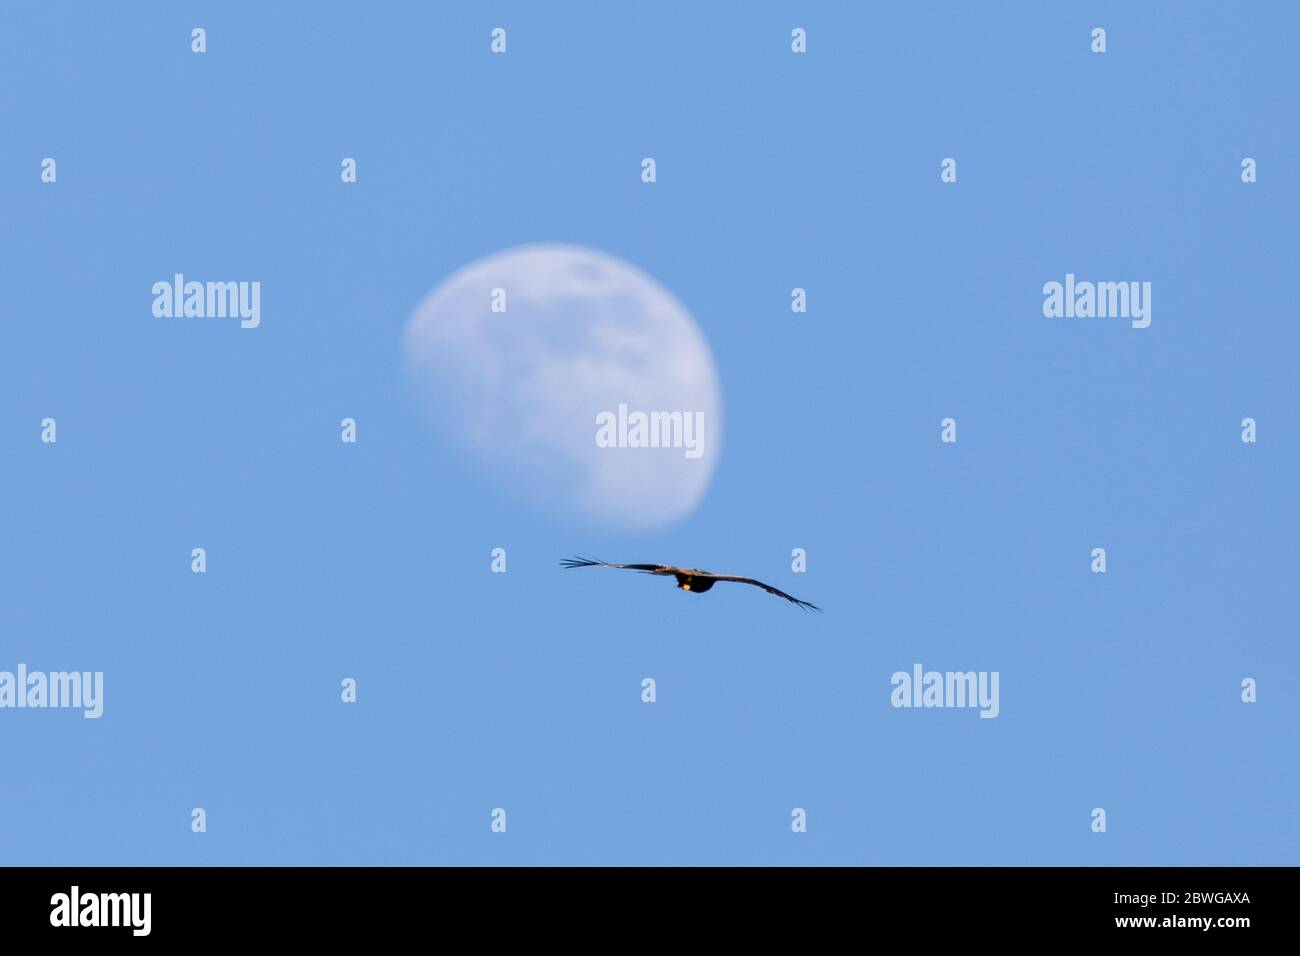 UK Wetter: Am Abend eines weiteren sehr warmen Tages mit klarem blauen Himmel fliegt ein Roter Drachen (Milvis milvis), während der Gibbous Moon das Sonnenlicht reflektiert. © Ian Jones/Alamy Live News Stockfoto